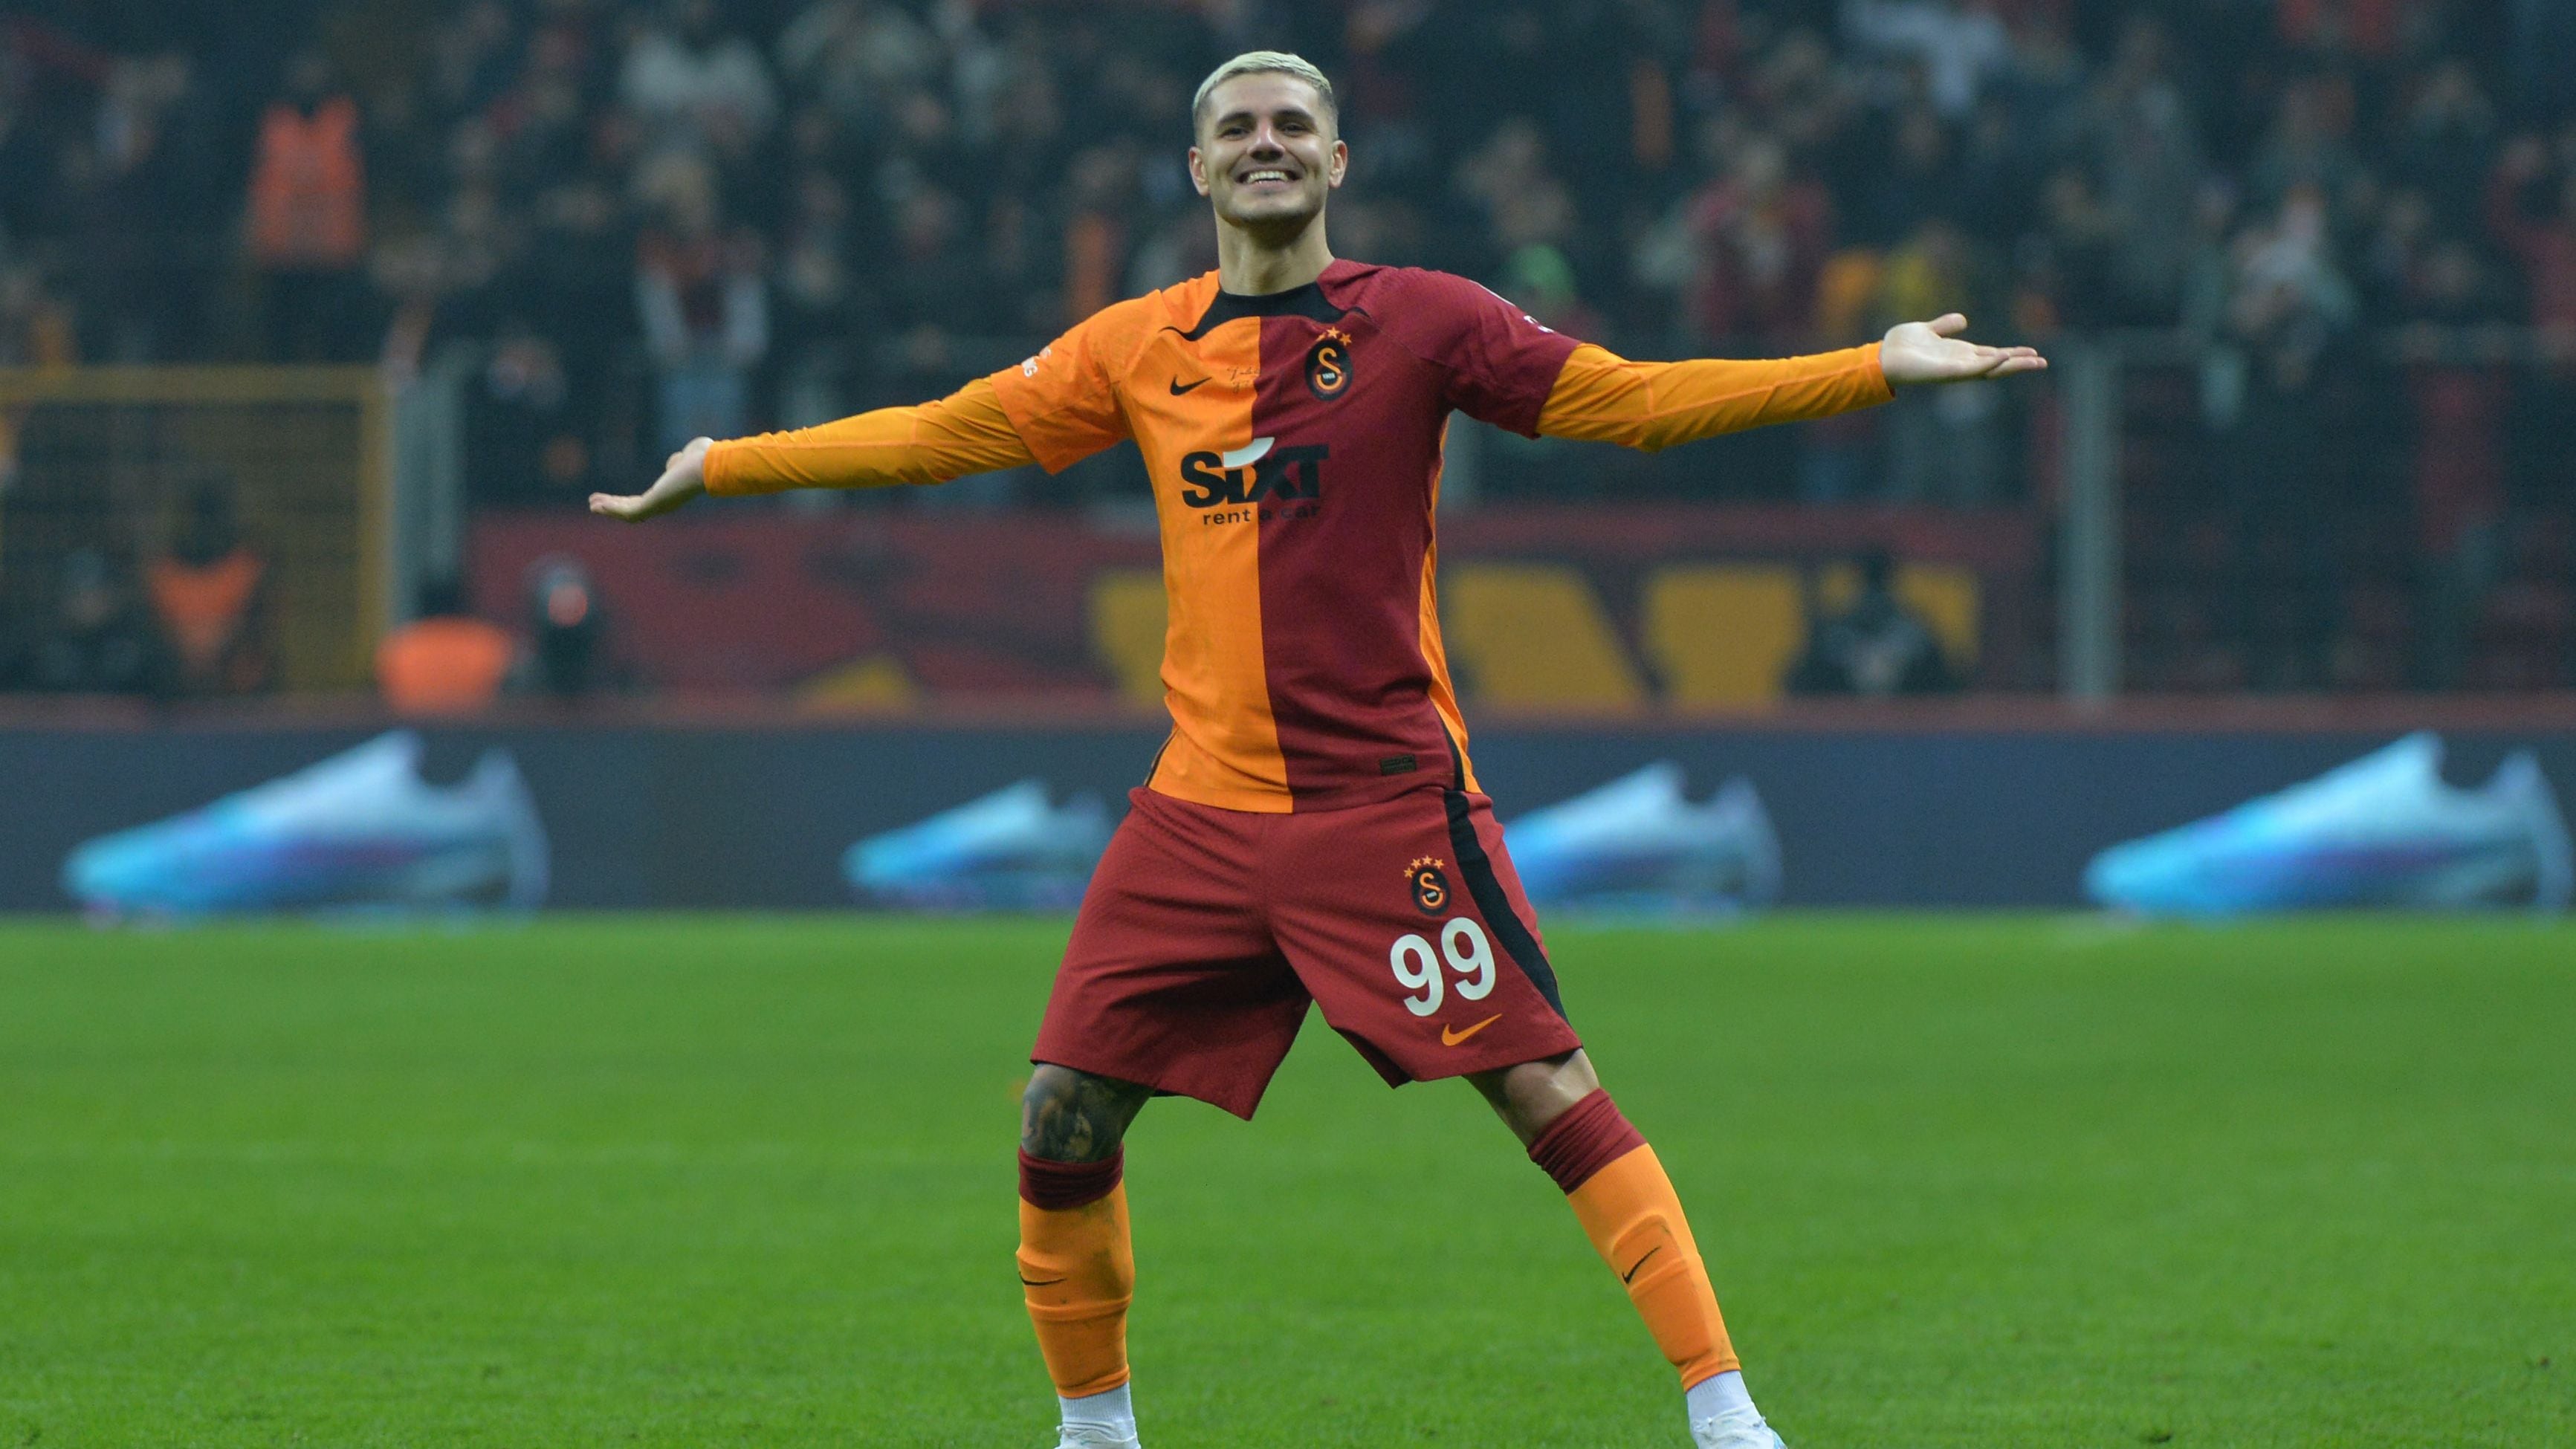 Galatasaray v Umraniyespor - Super Lig